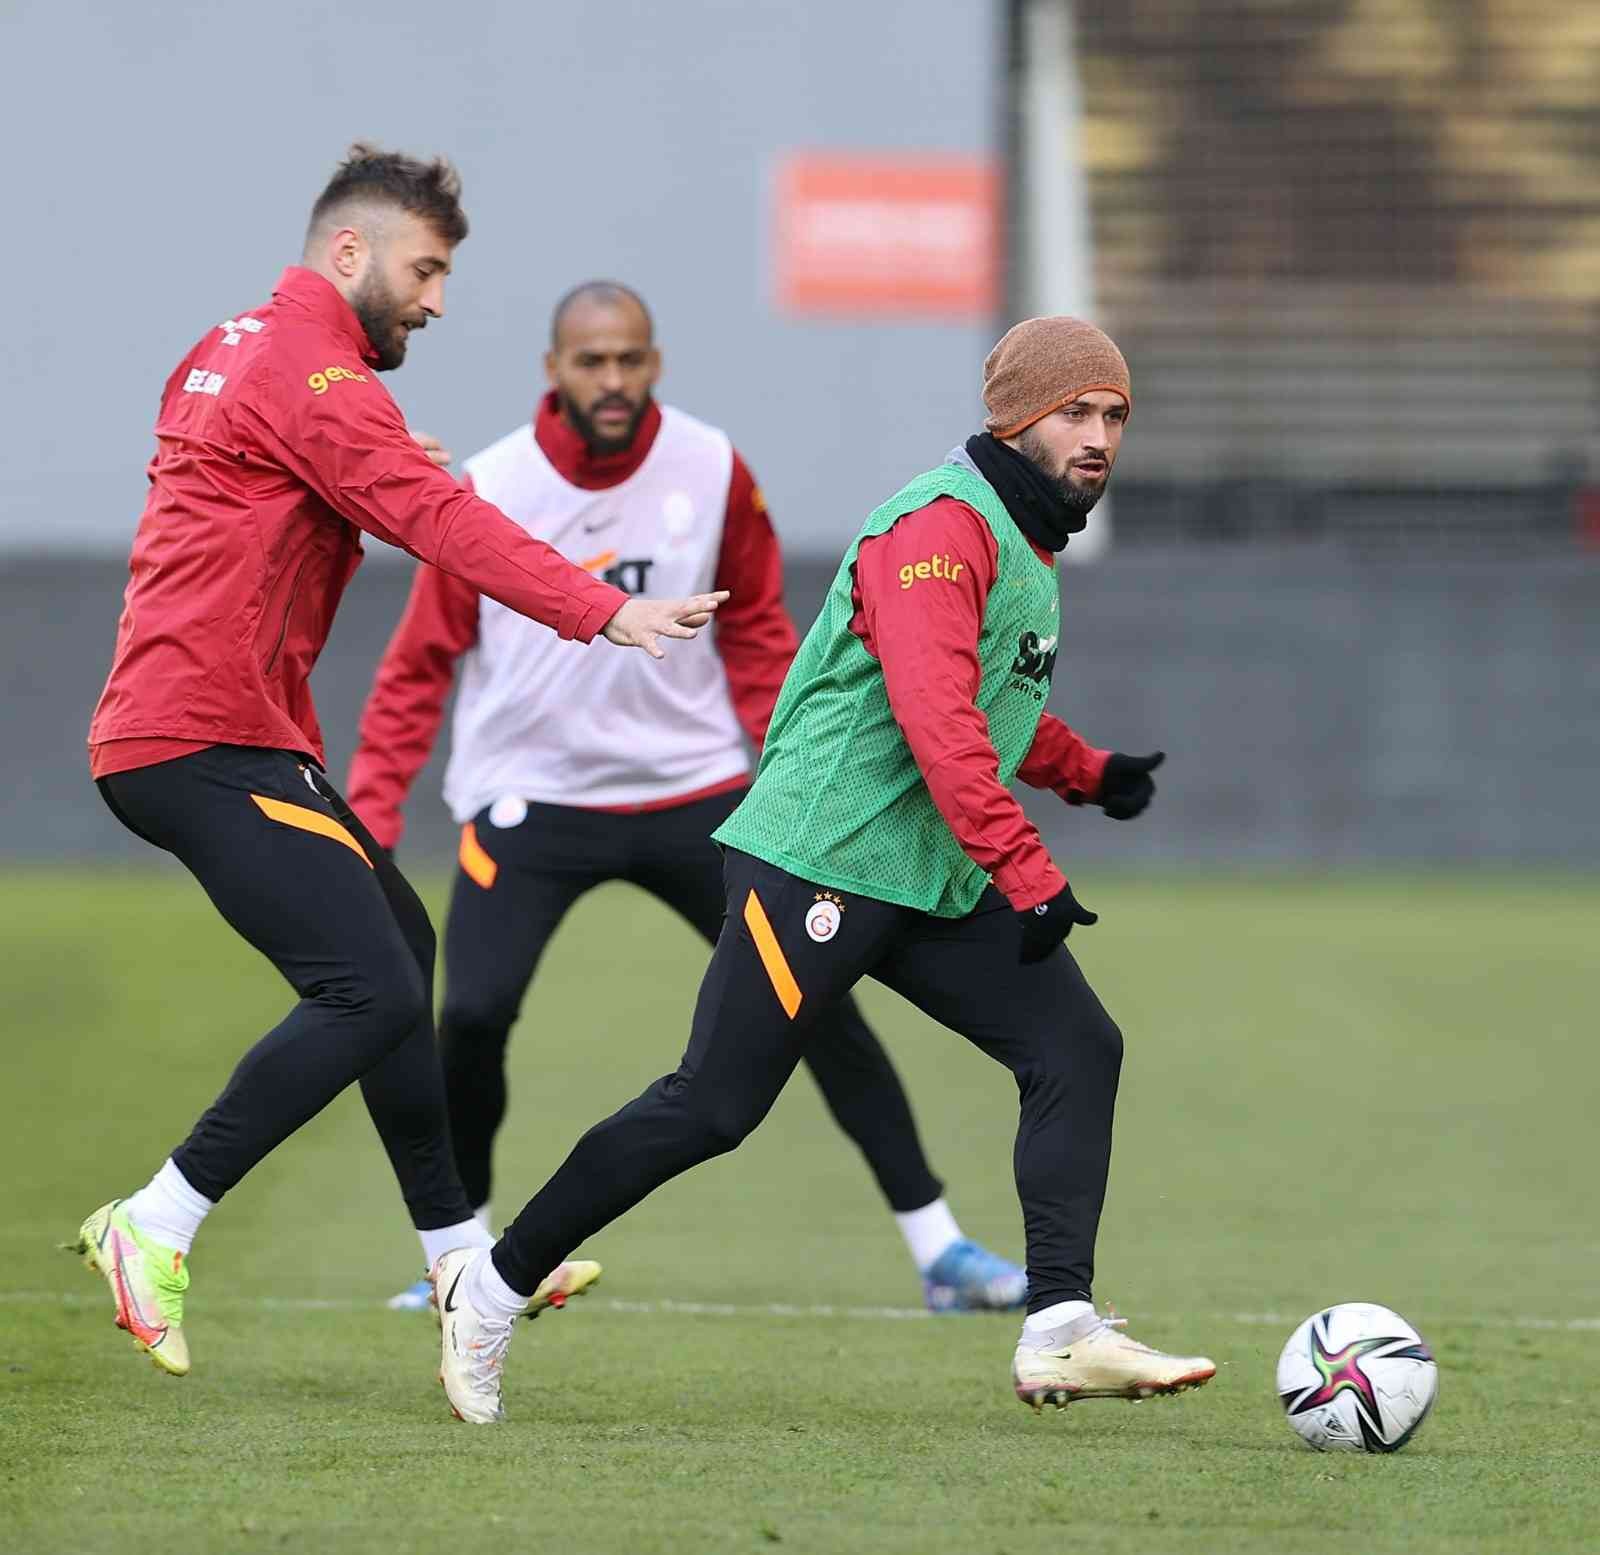 Beşiktaş, Galatasaray derbisinin hazırlıklarına başladı